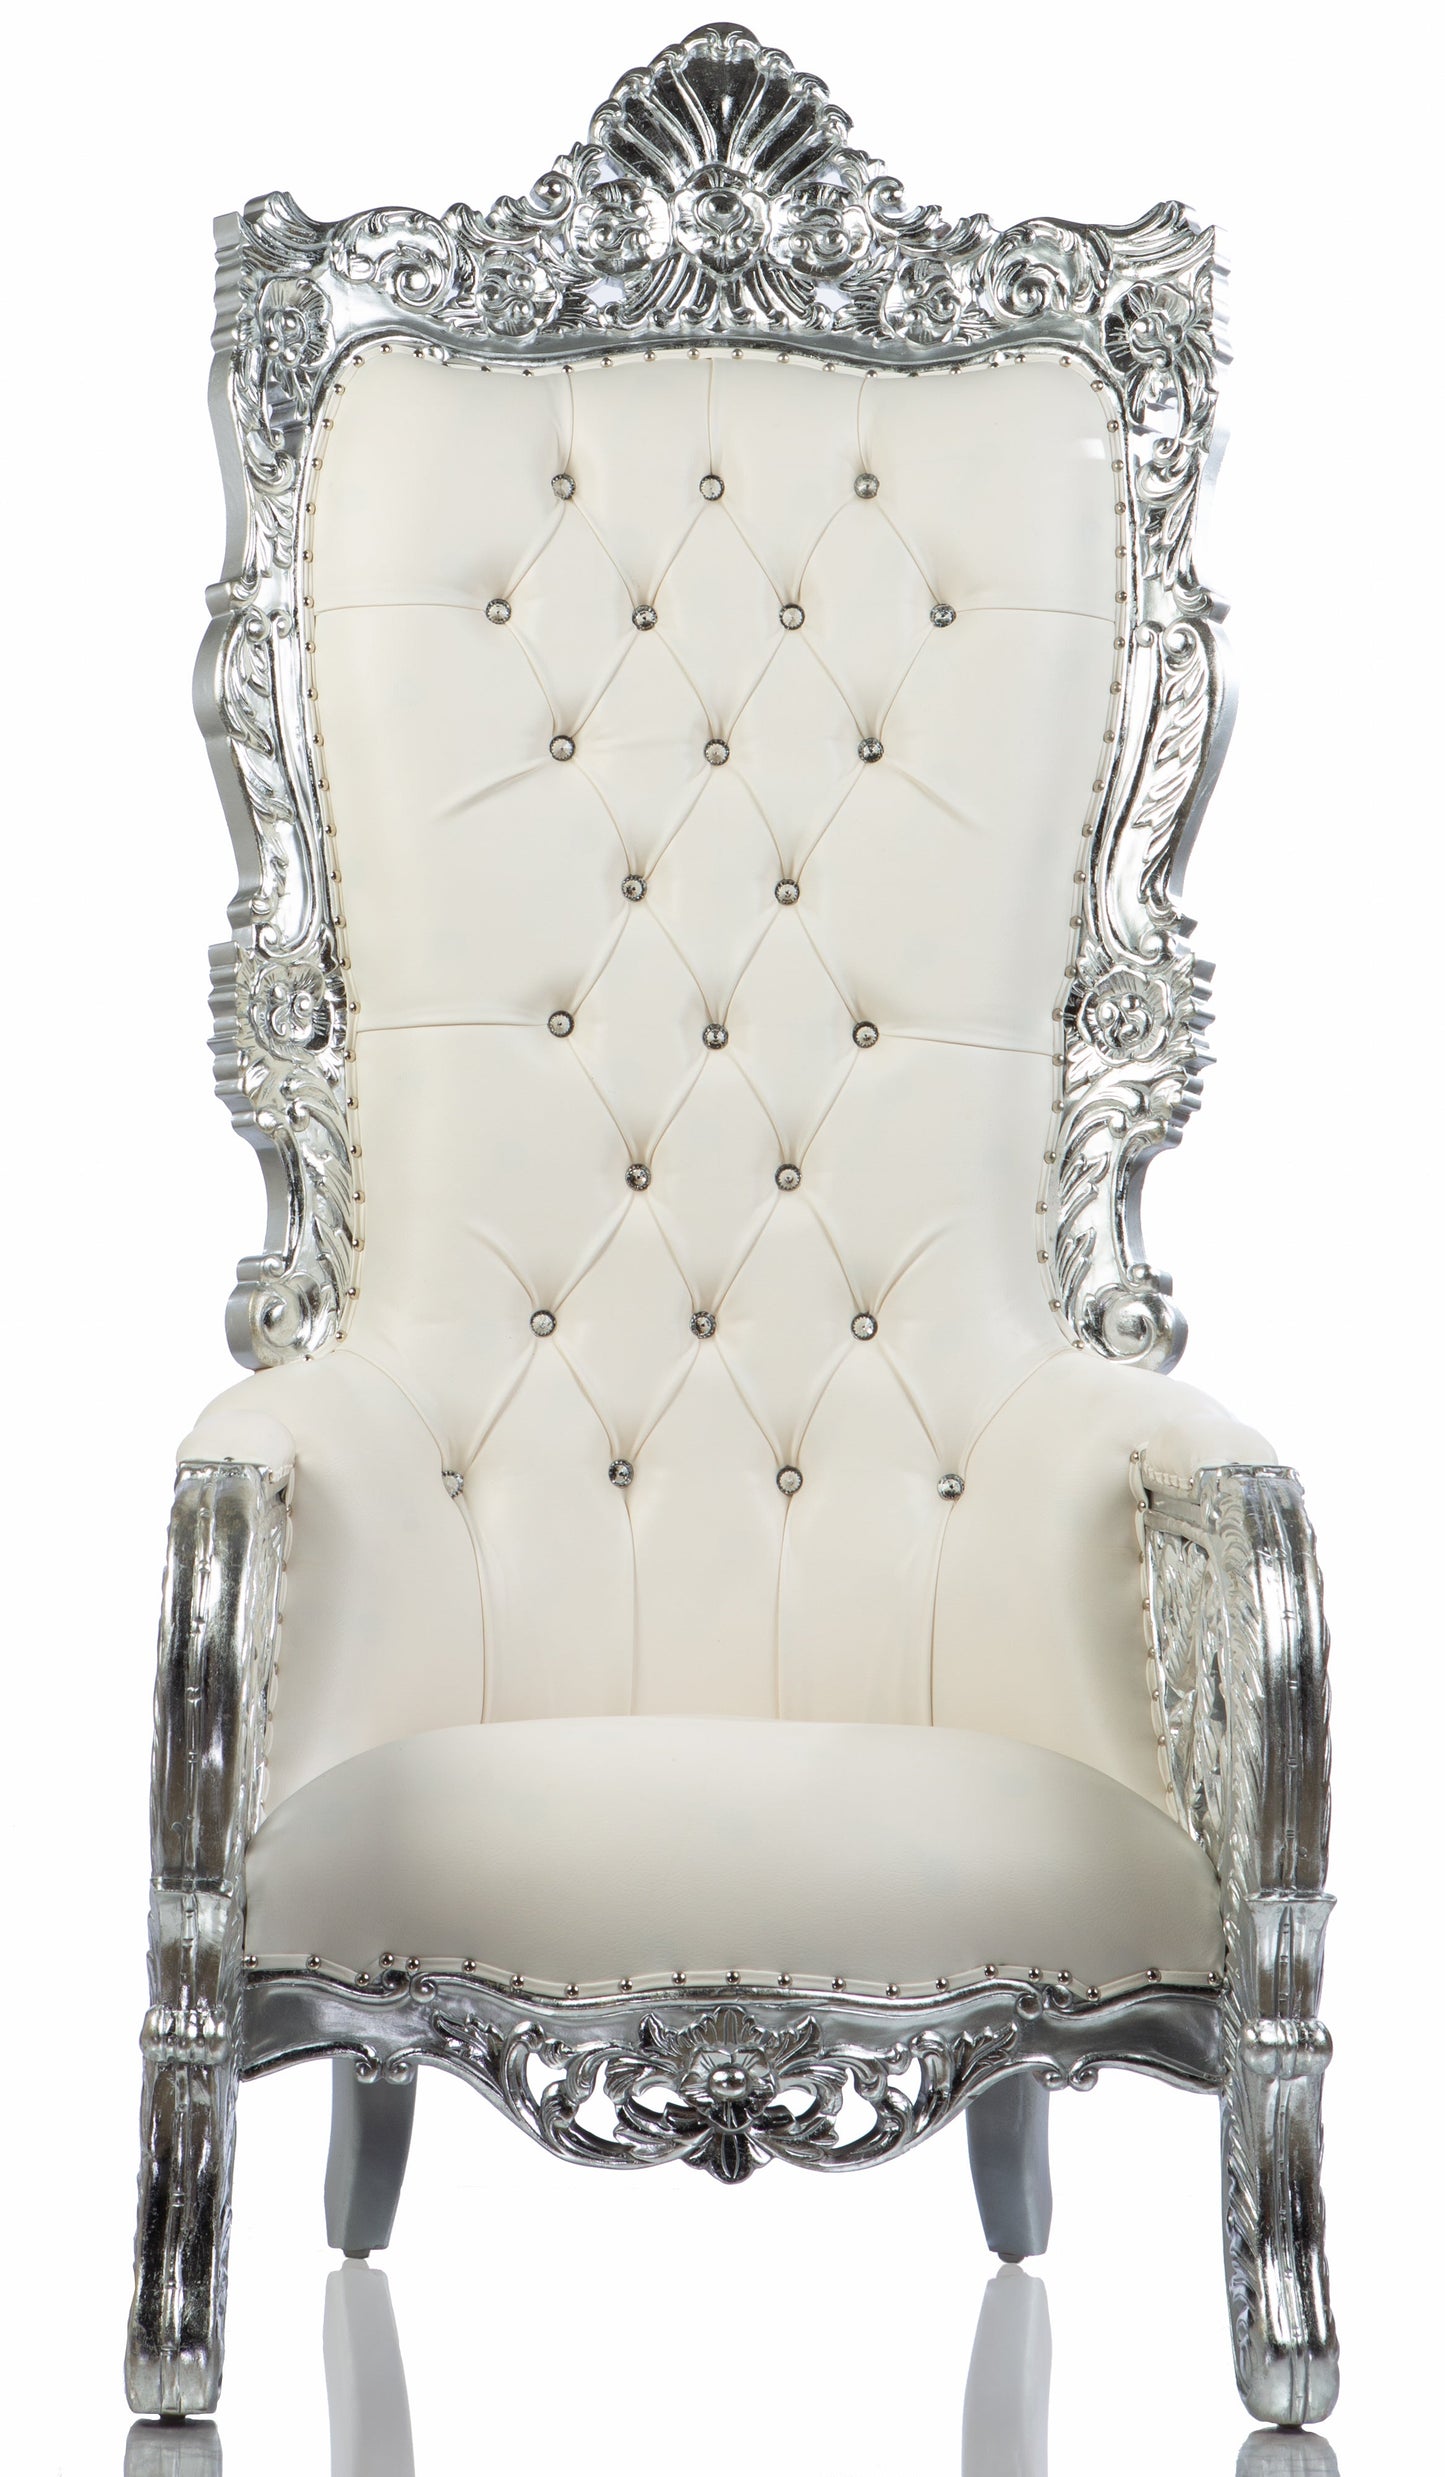 Queen Bellagio Throne